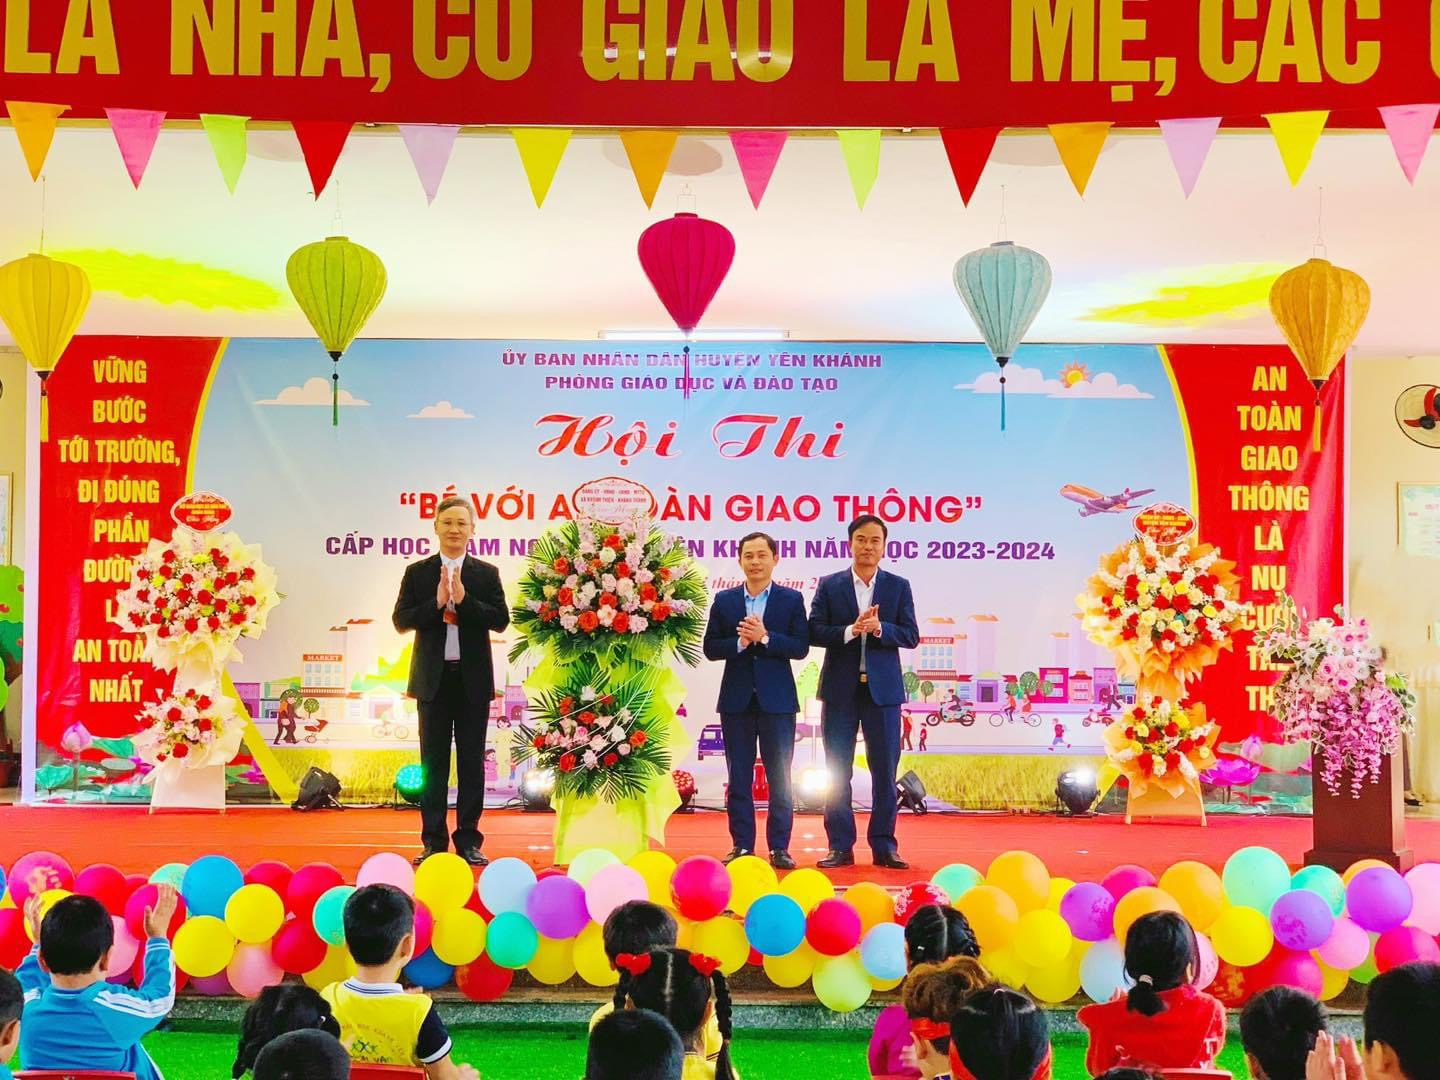 Đồng chí Nguyễn Thế Quang - HUV, Bí thư Đảng bộ xã chúc mừng Hội thi Bé với na toàn giao thông tại Trường Mầm non xã Khánh Thiện